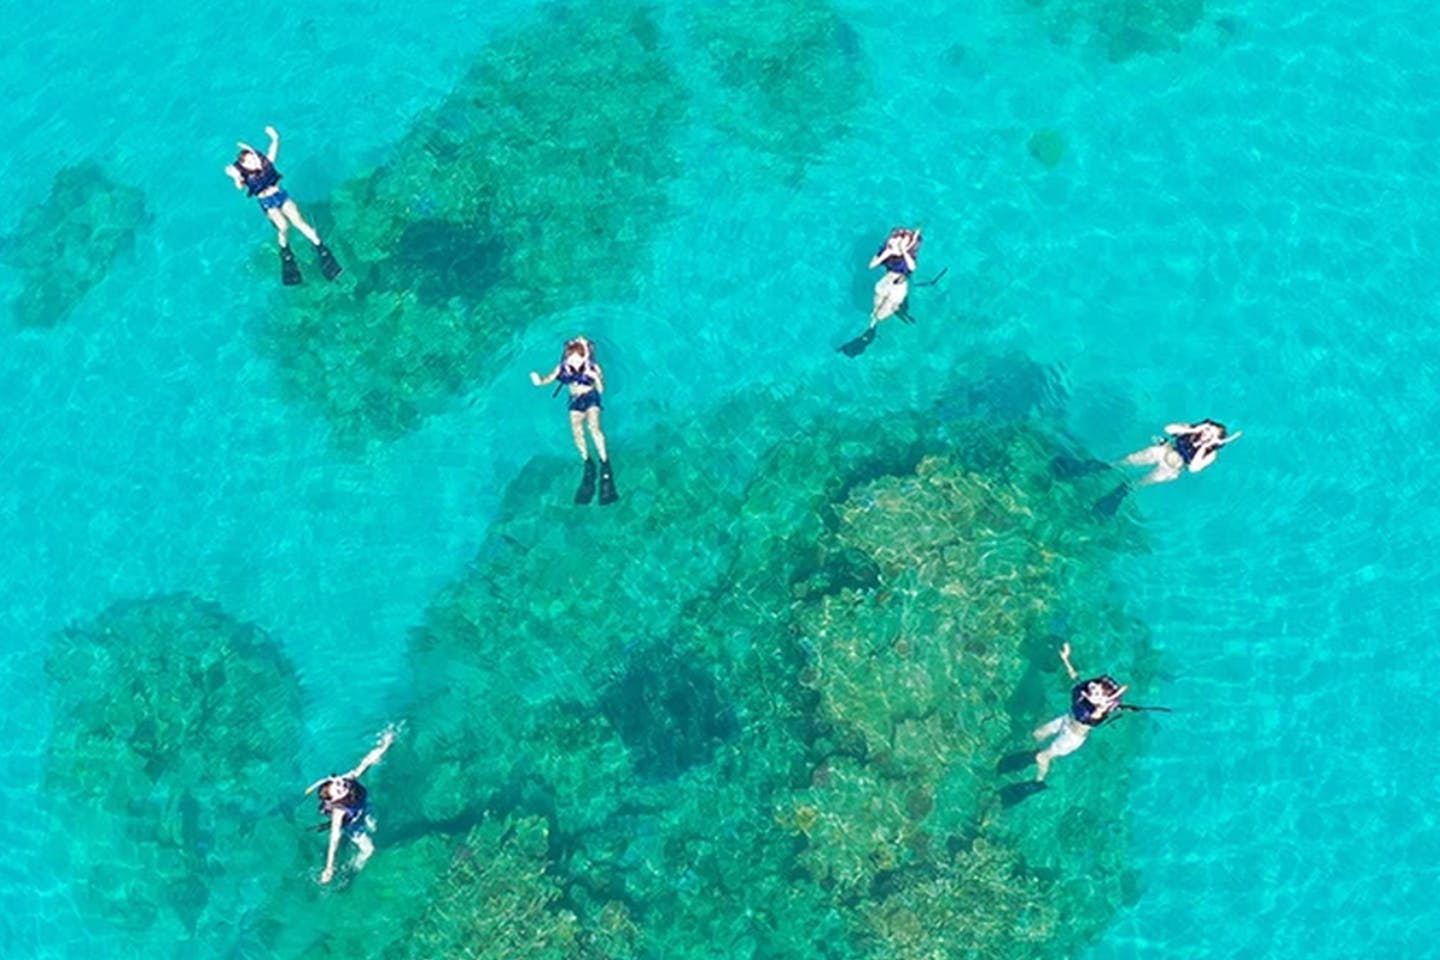 【鹿児島・奄美大島・シュノーケリング】奄美の美しい海でシュノーケリング1日体験